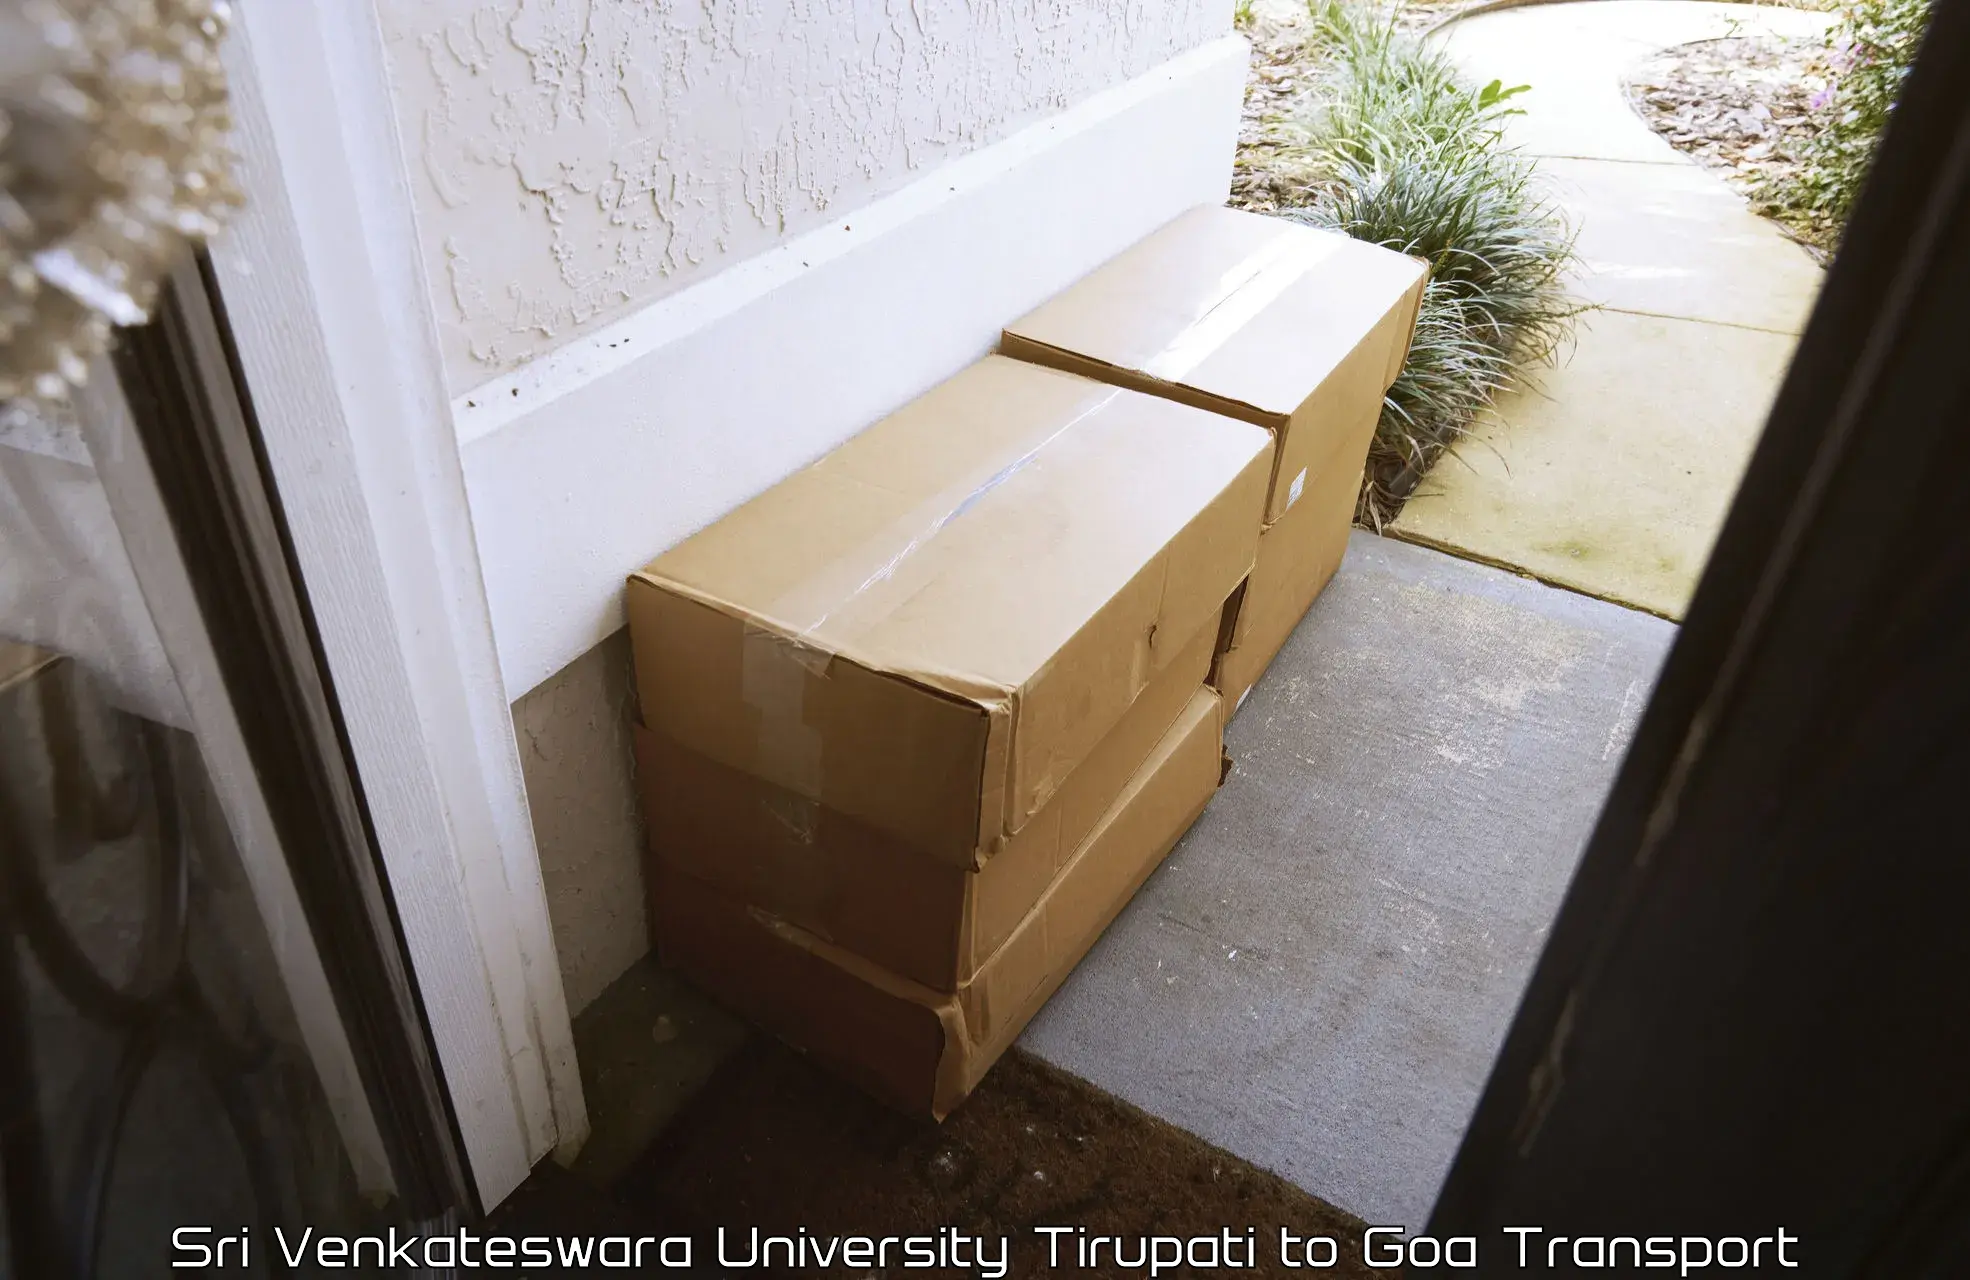 Goods delivery service in Sri Venkateswara University Tirupati to NIT Goa